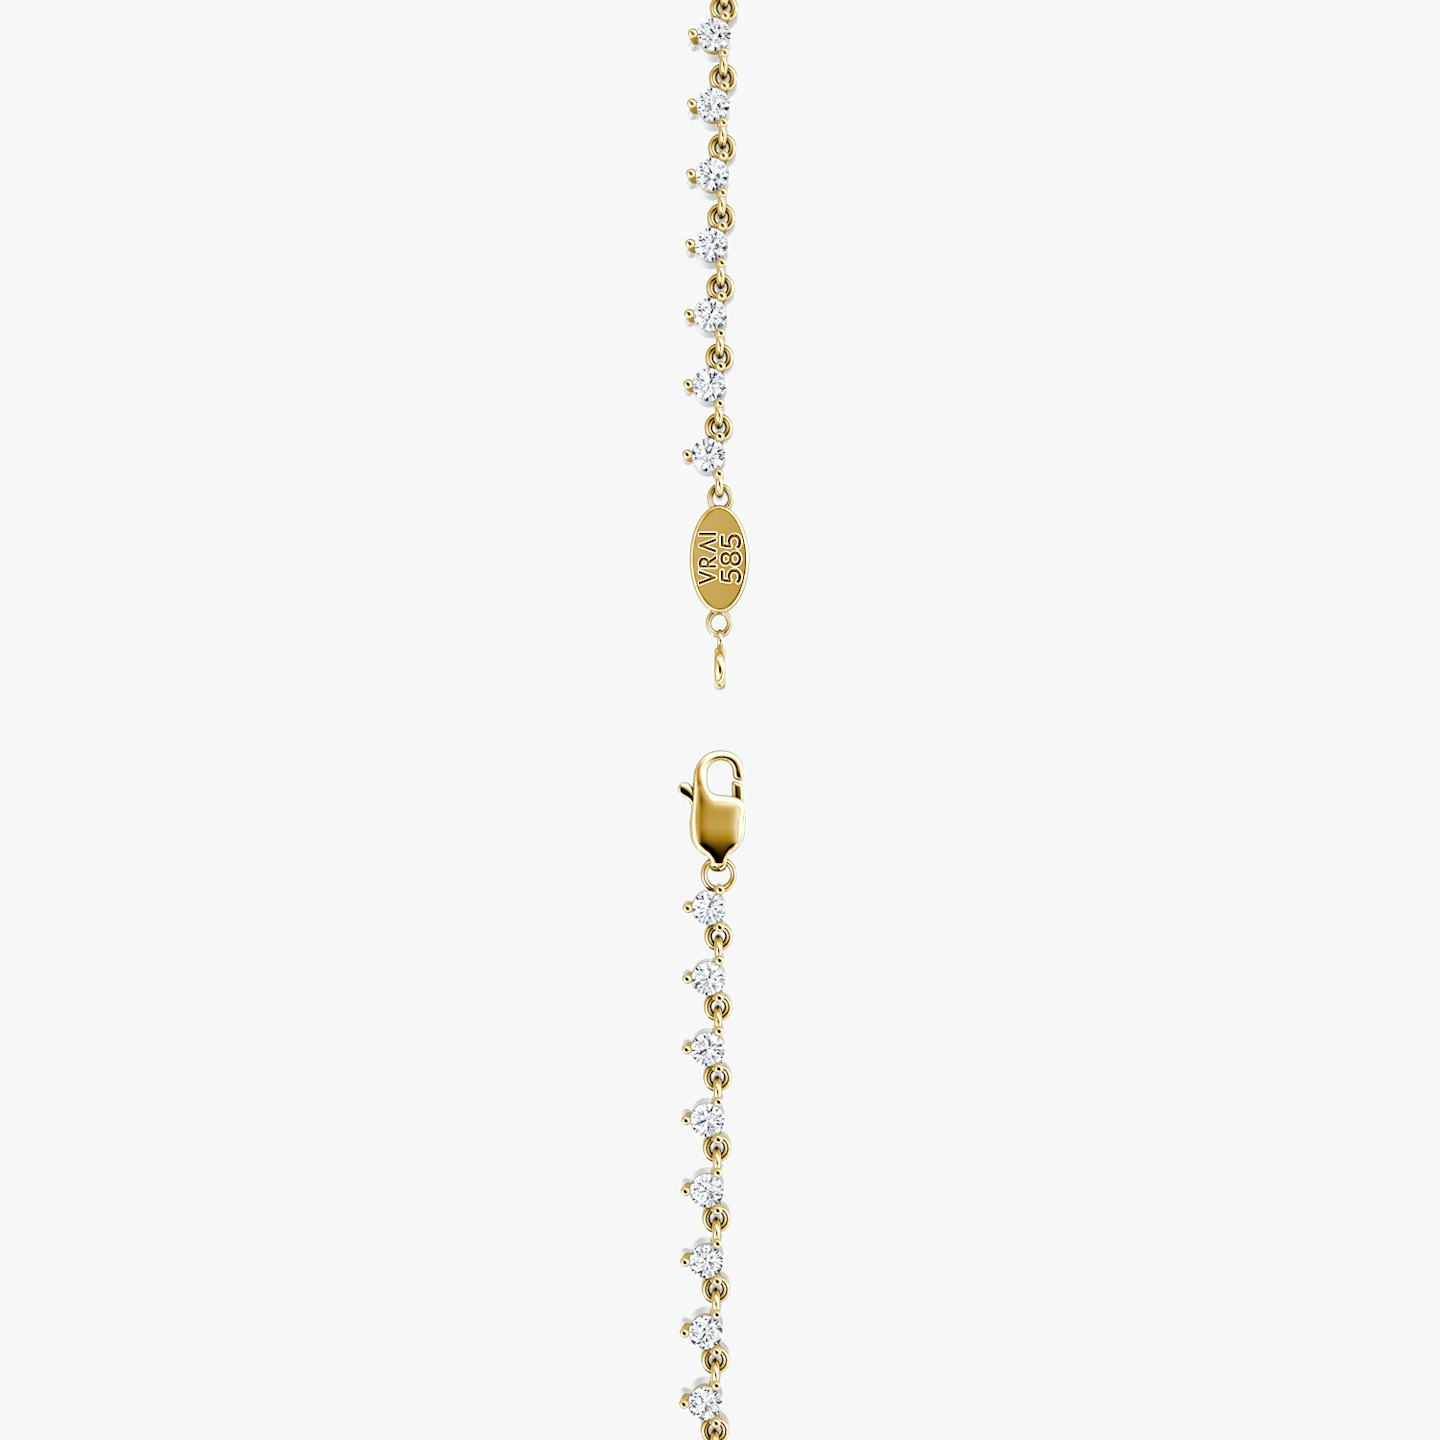 Collar Infinity Linked Tenis | Brillante | 14k | Oro amarillo de 18 quilates | Peso en quilates: 4¼ | Longitud de la cadena: 16-18